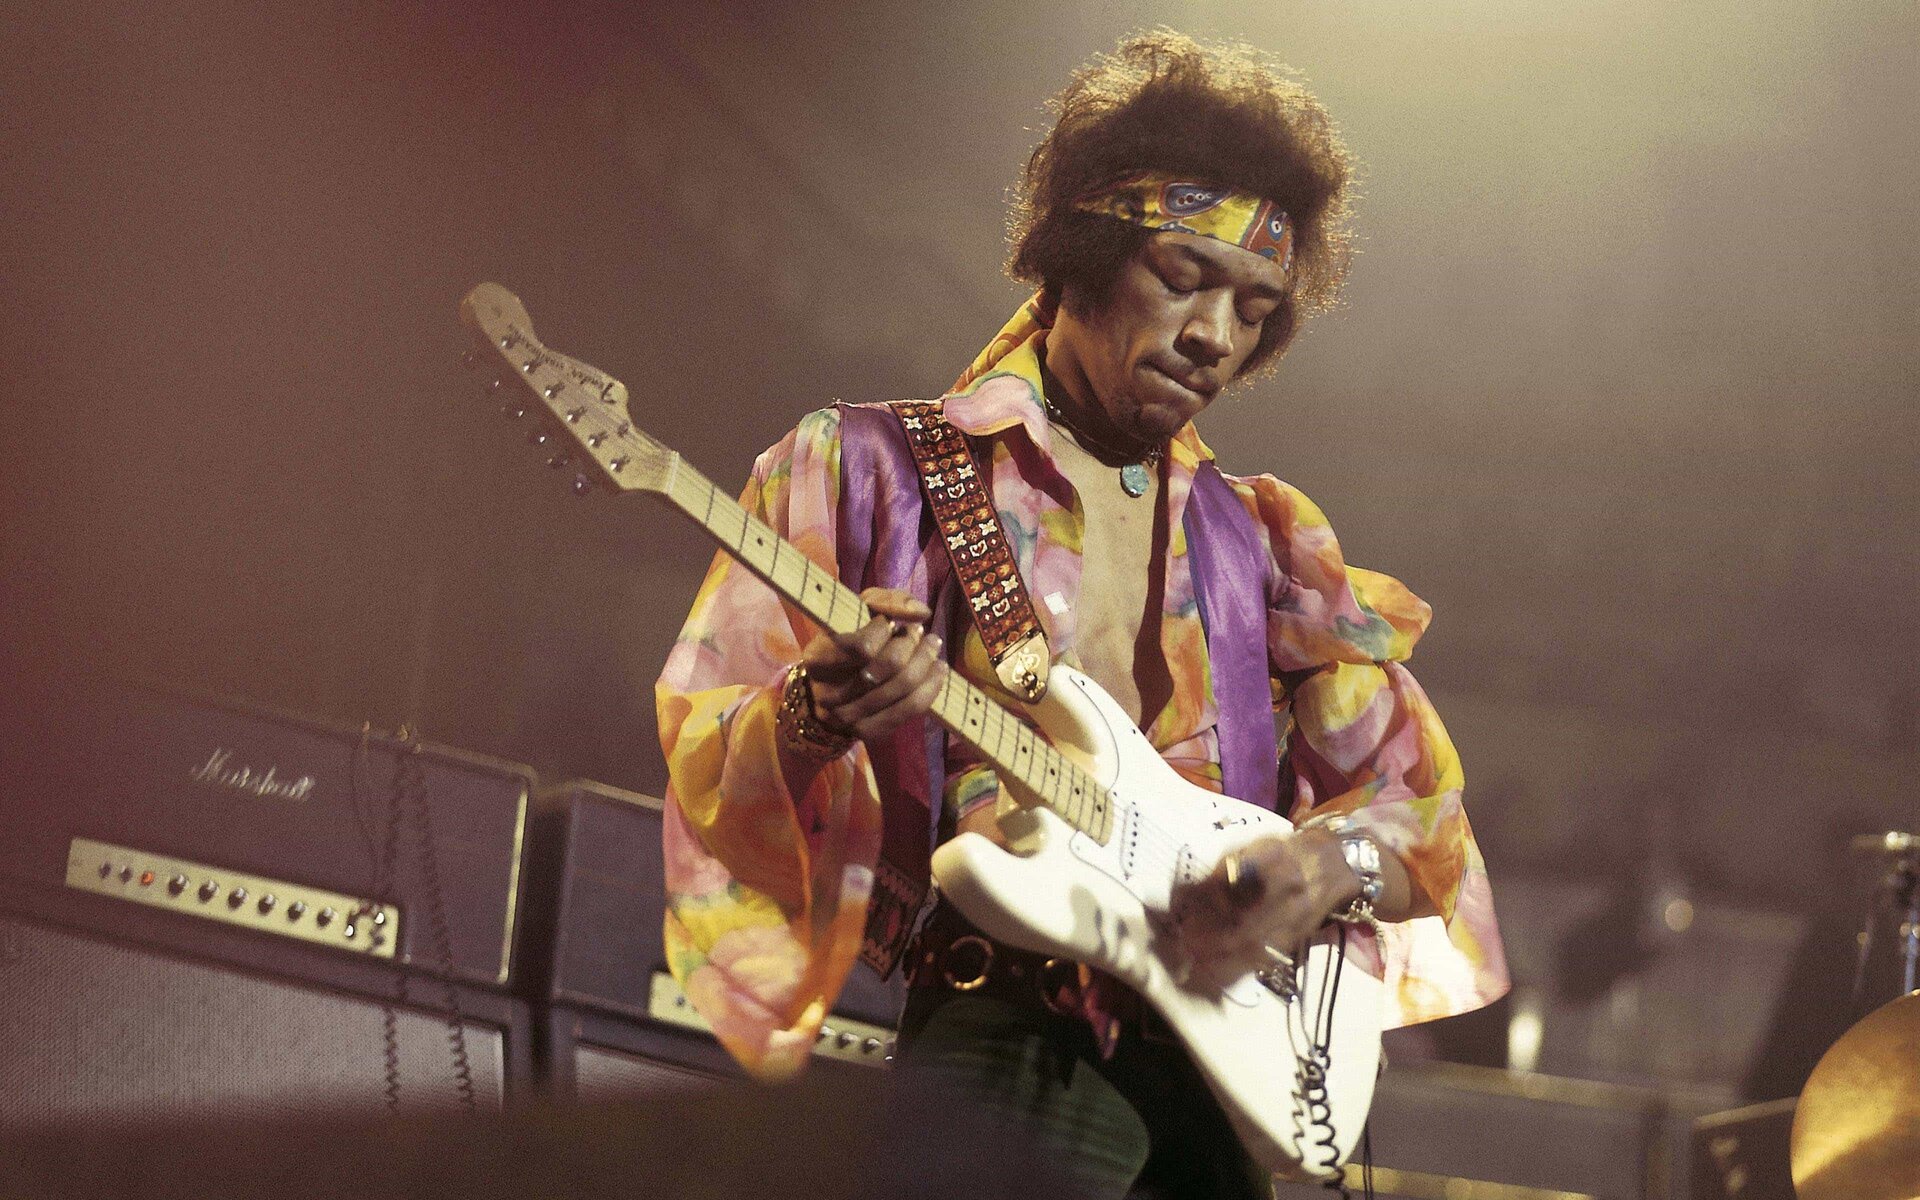 Ilustracja przedstawia amerykańskiego gitarzystę, wokalistę, kompozytora oraz autora tekstów Jimiego Hendrixa. Mężczyzna znajduje się na scenie podczas koncertu. Gra na gitarze. Ubrany jest w kolorową koszulę.